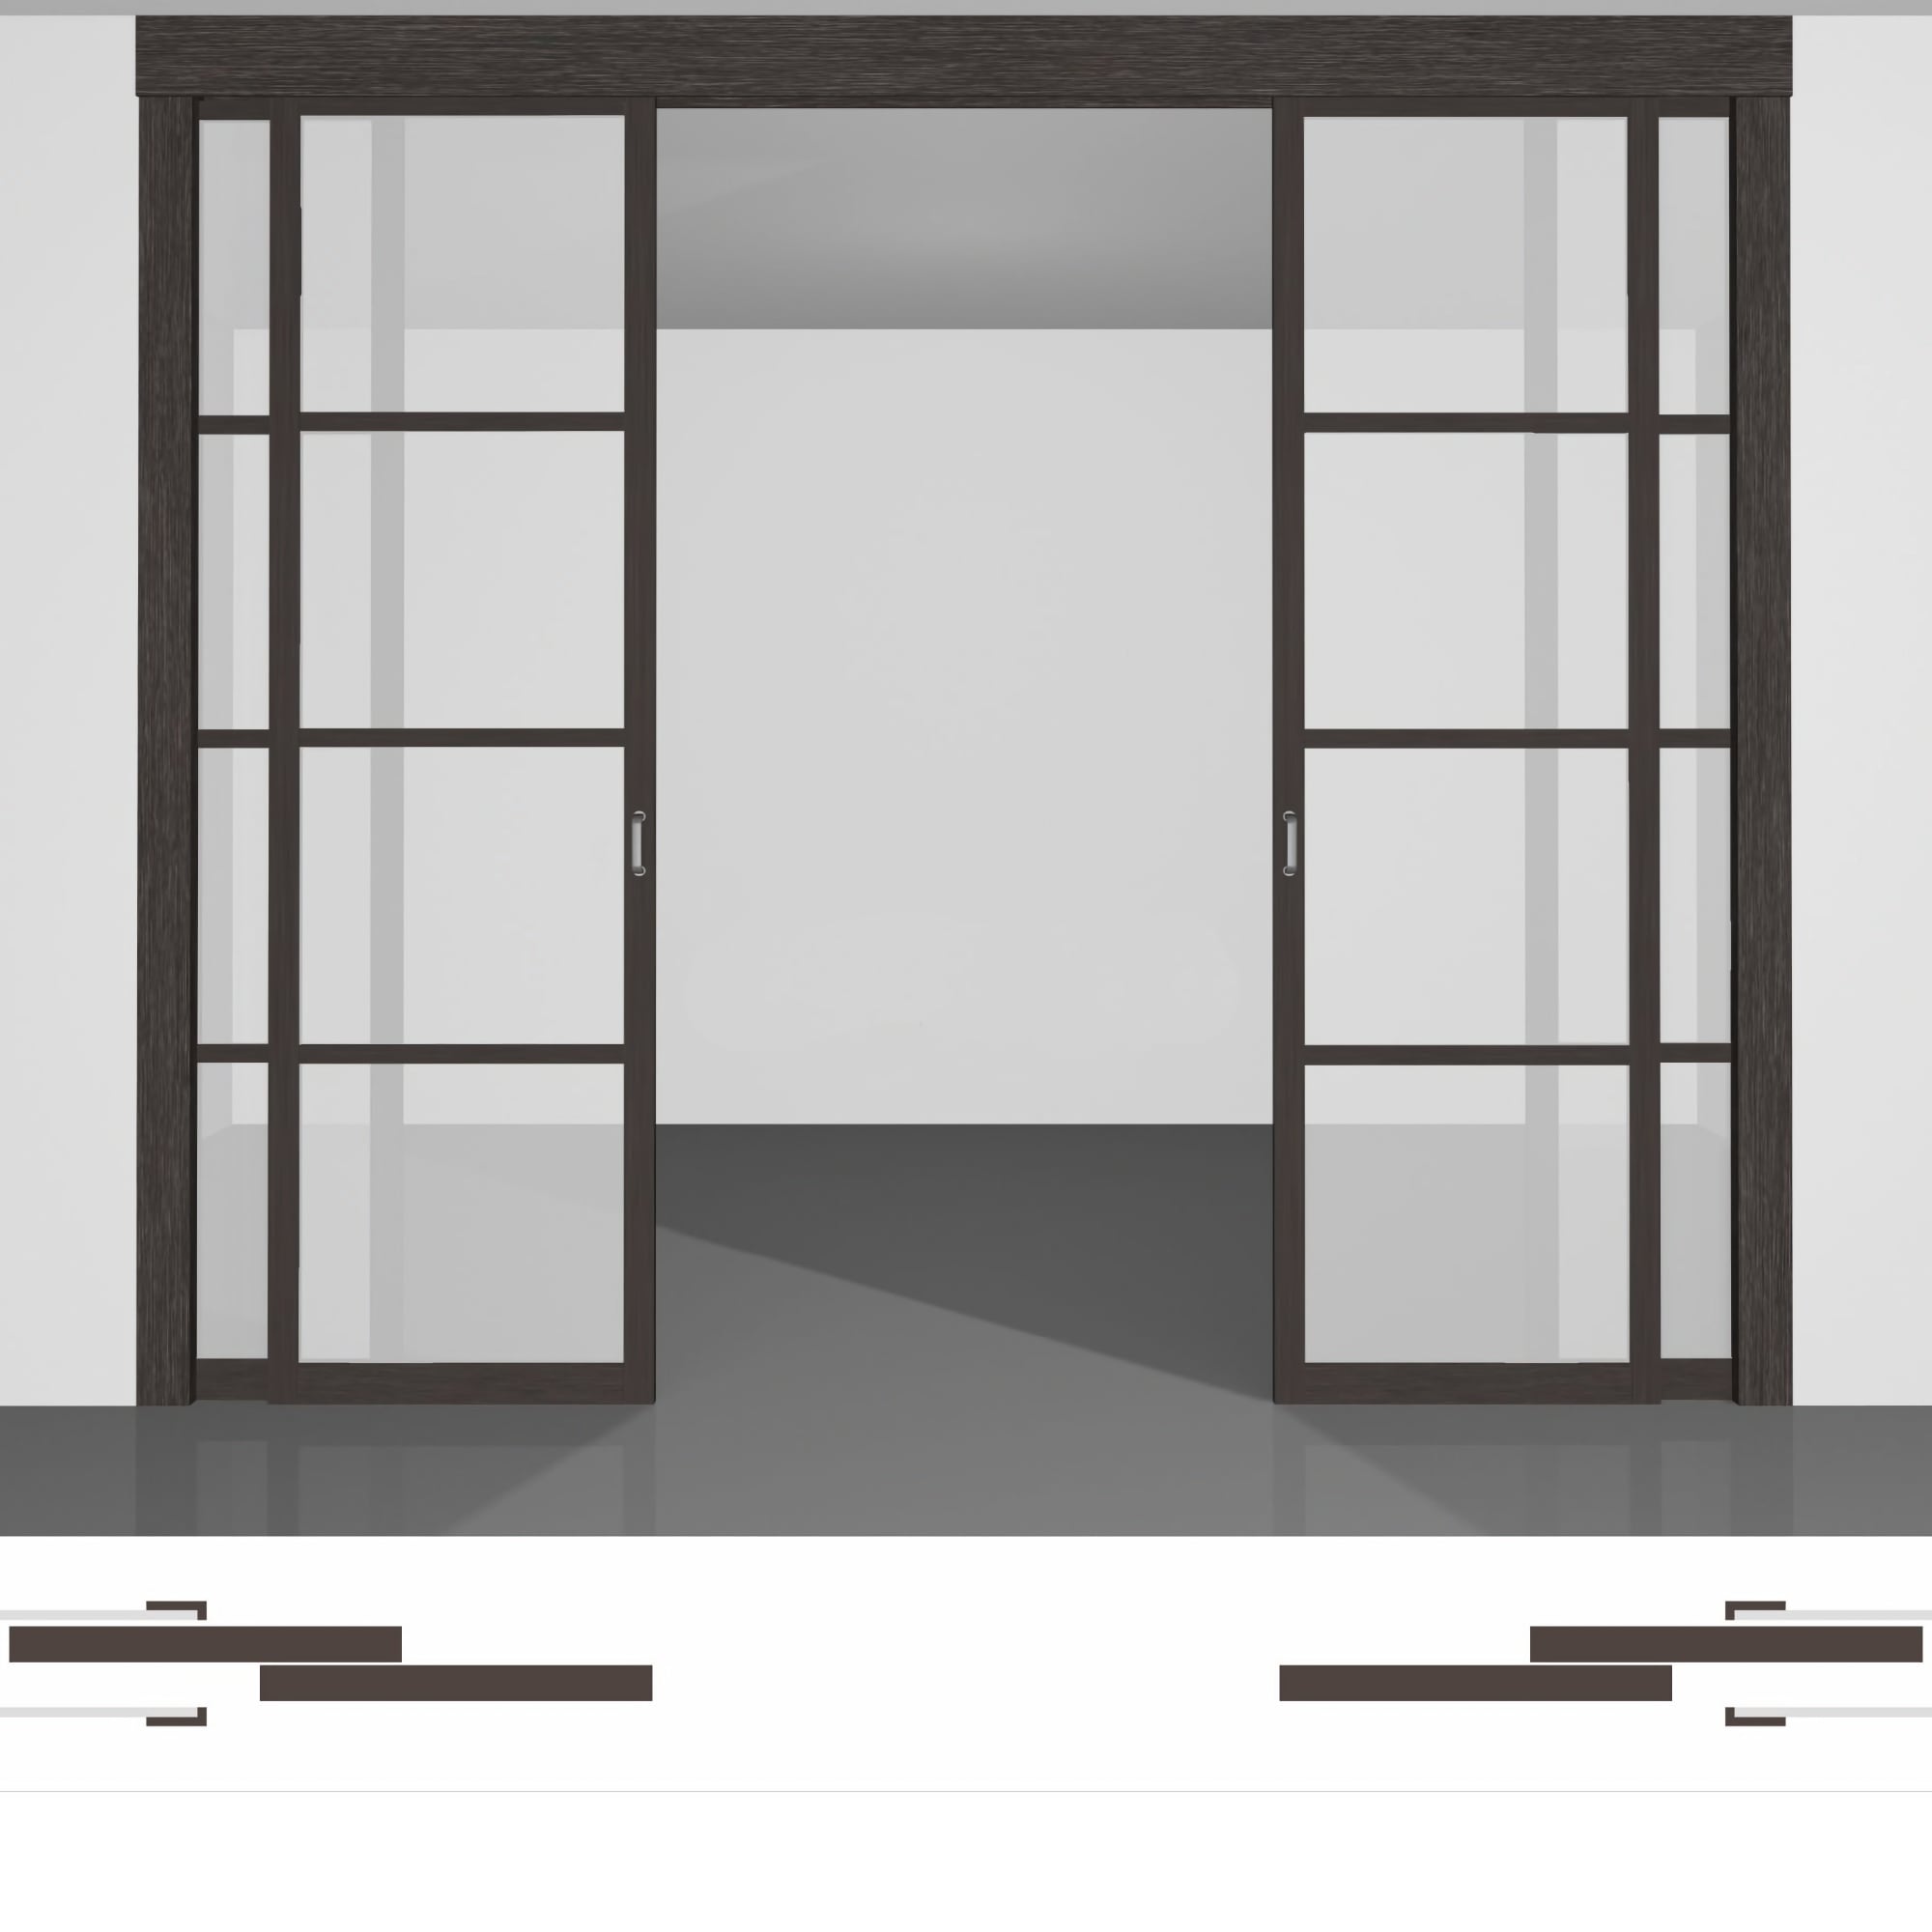 Раздвижная дверь в стену P02.2dv двойной комплект под потолок • установка внутрь стены